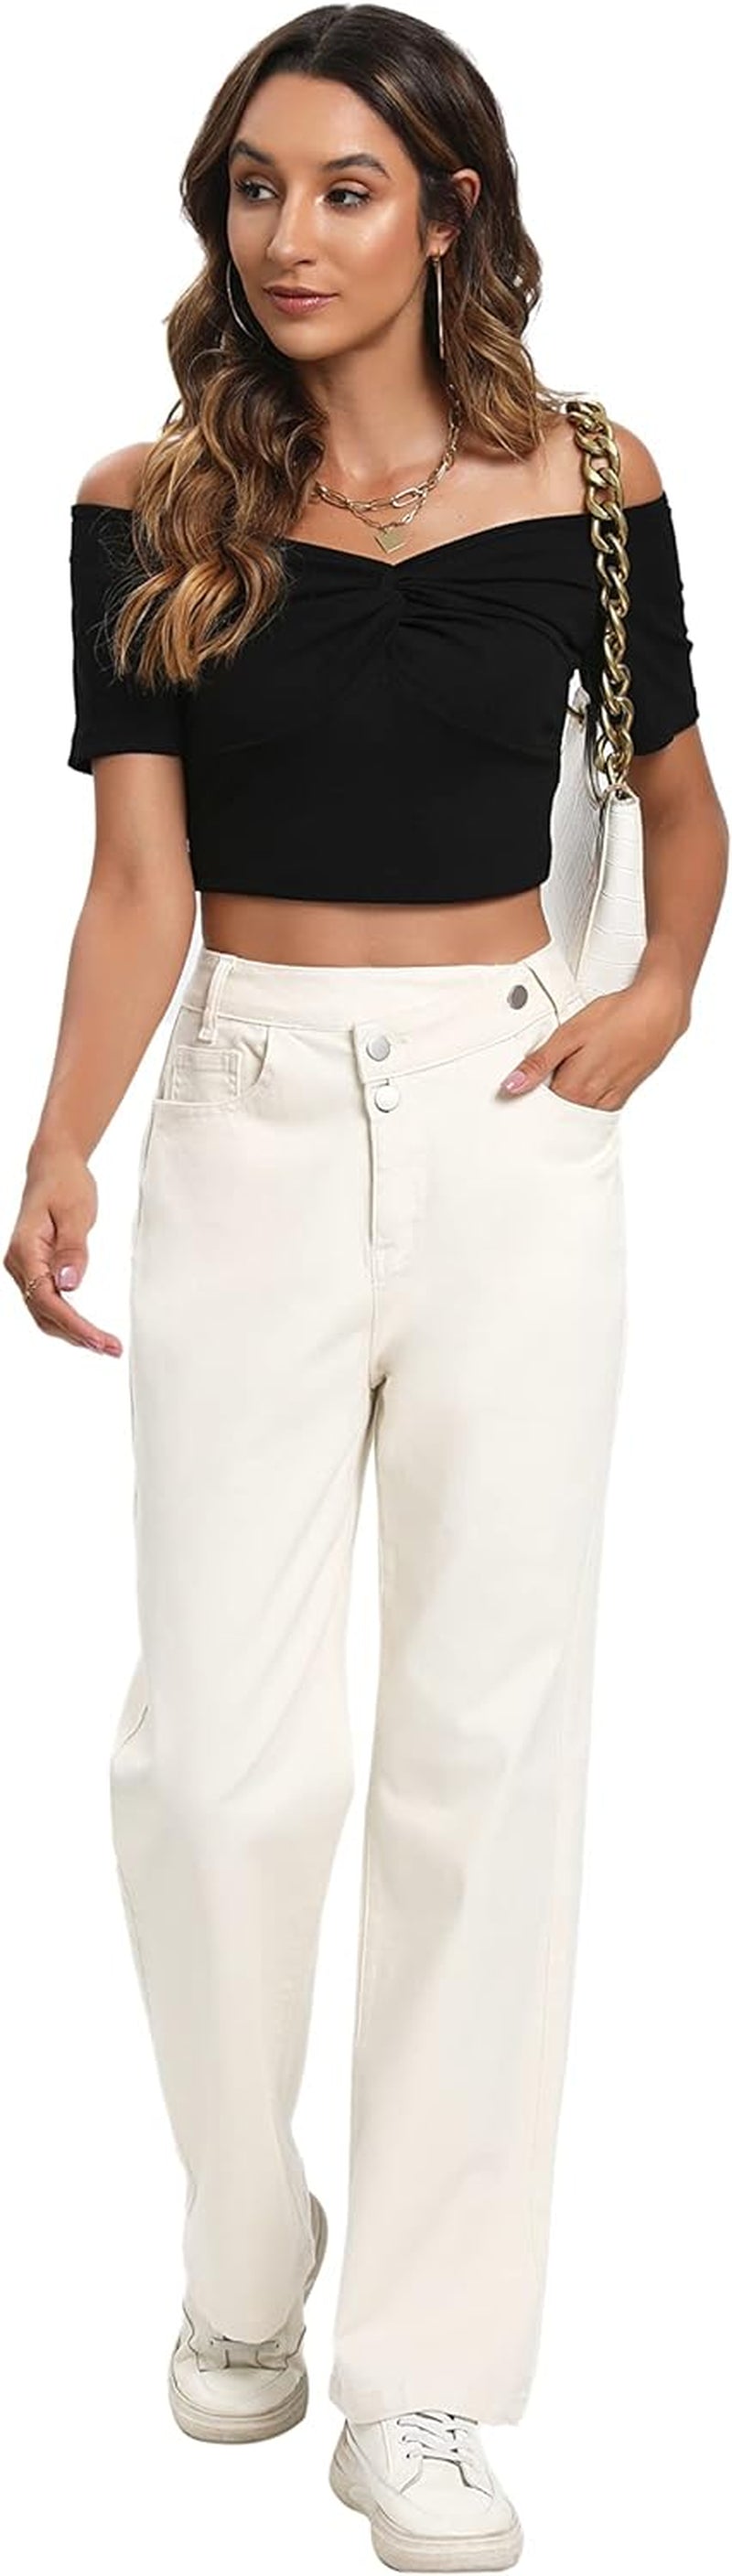  Women Jeans High Waist Wide Baggy Denim Pants